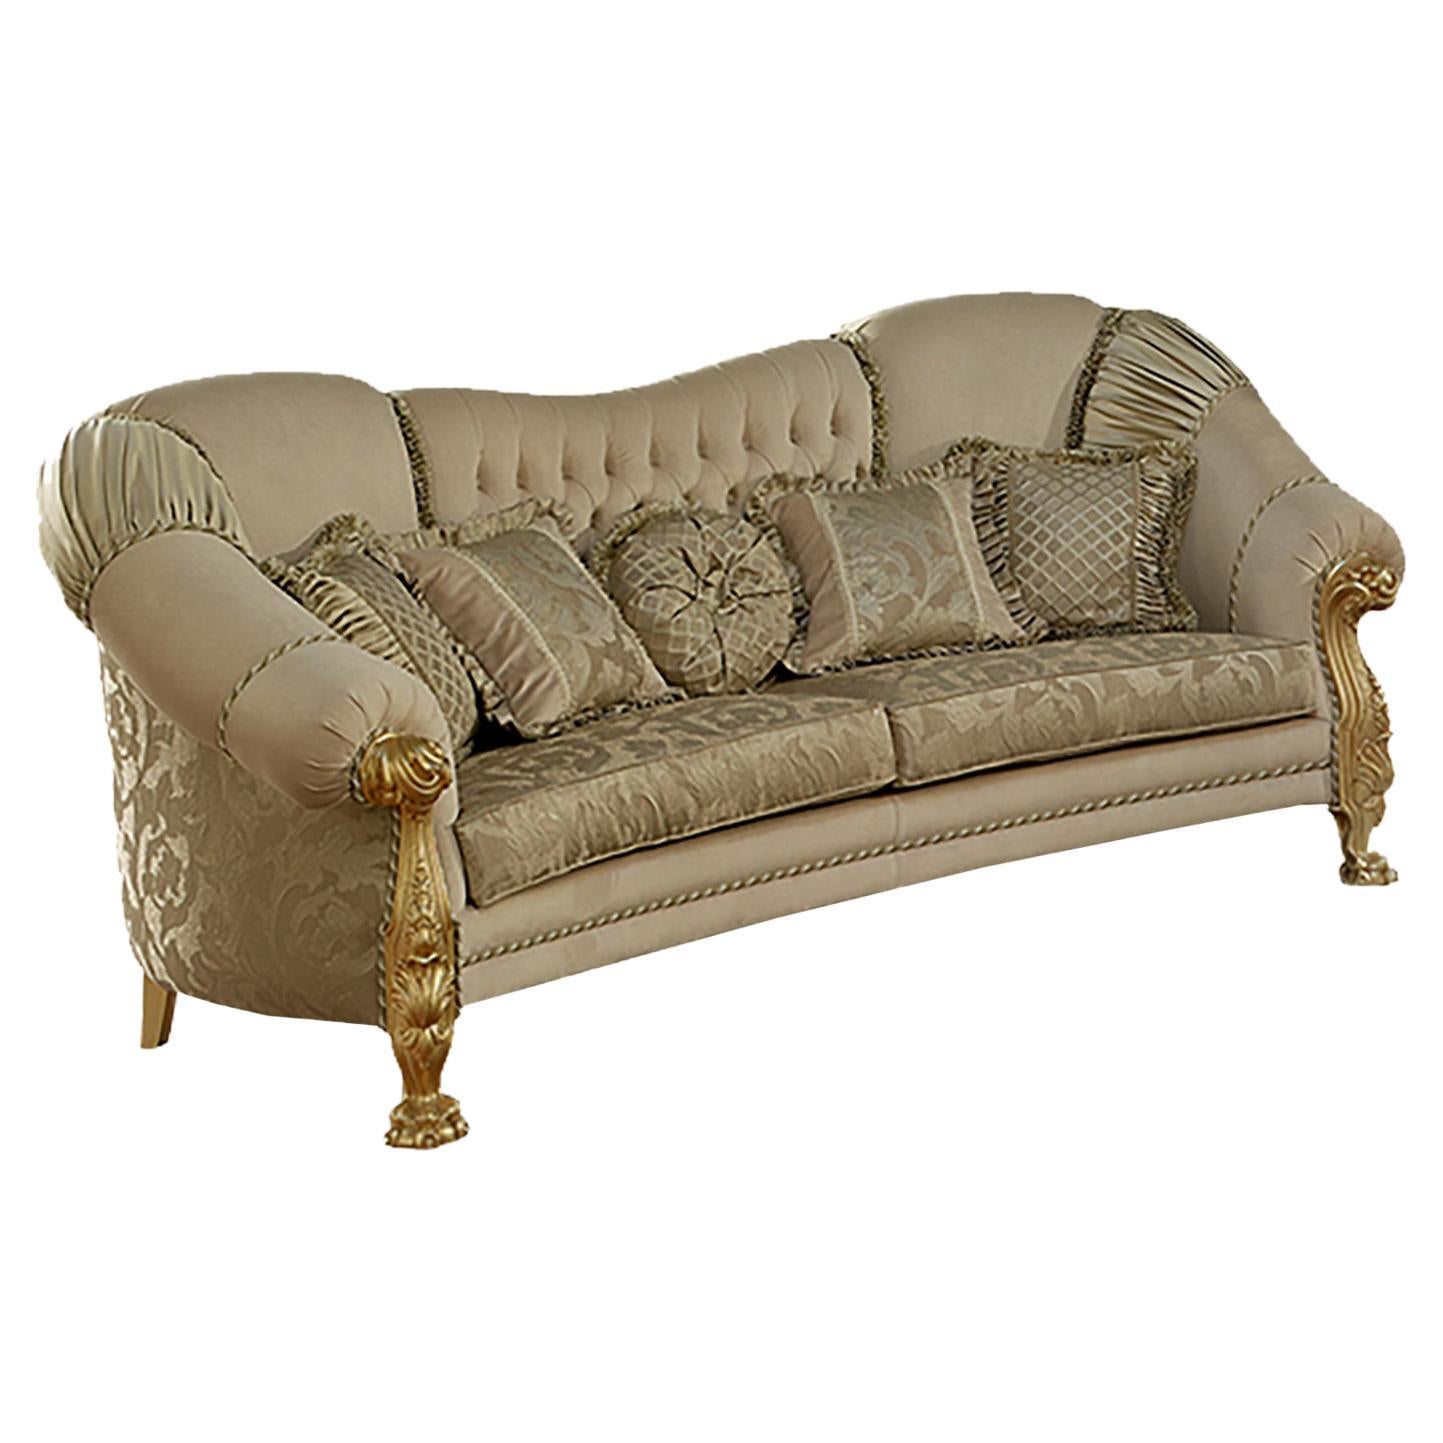 Canapé haut de gamme doré beige deux mers par Modenese Luxury Interiors